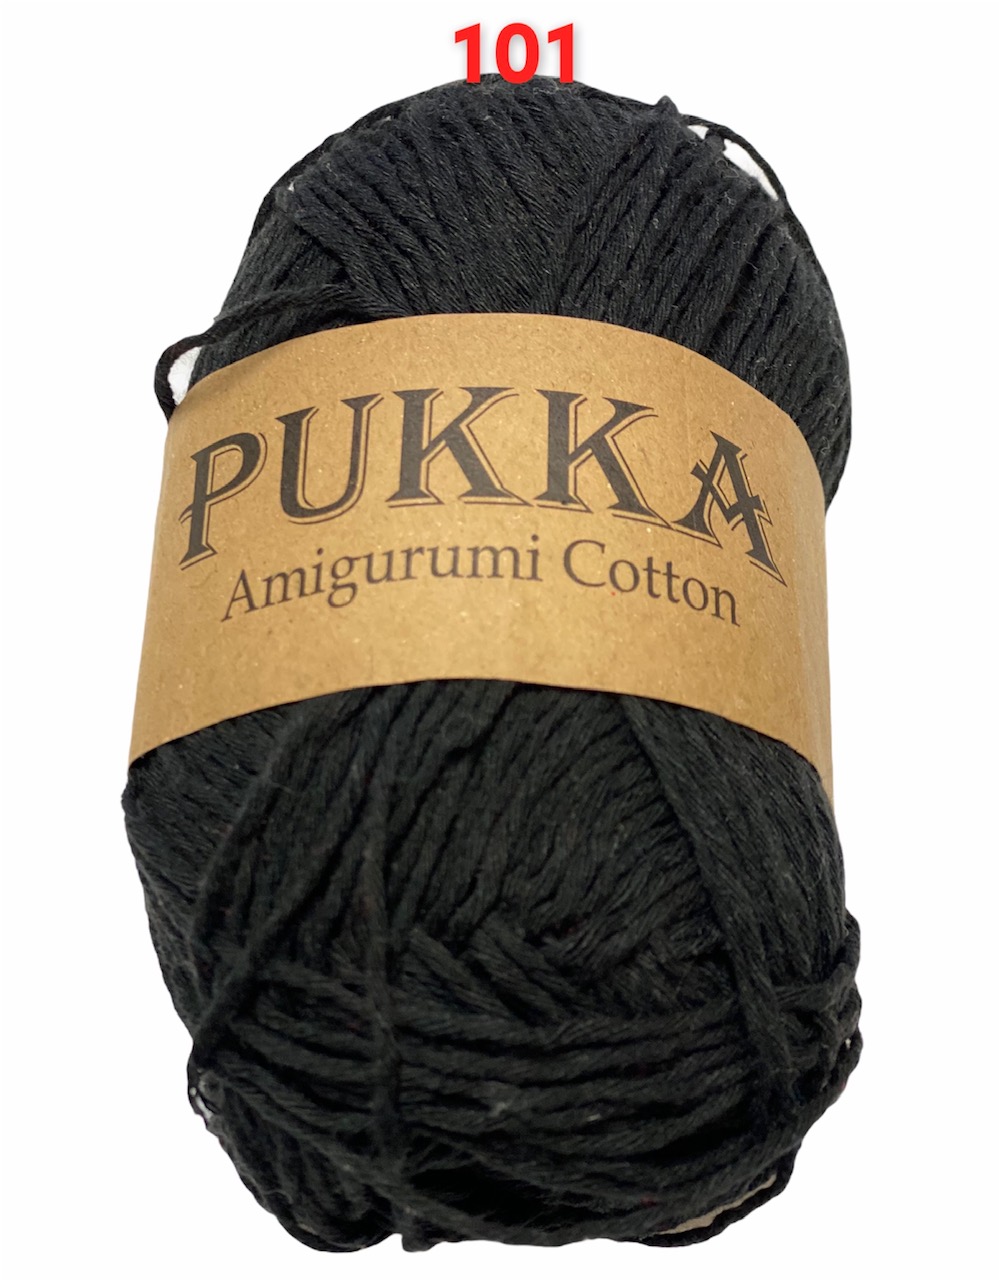 PUKKA Amigurumi Cotton 100g,101